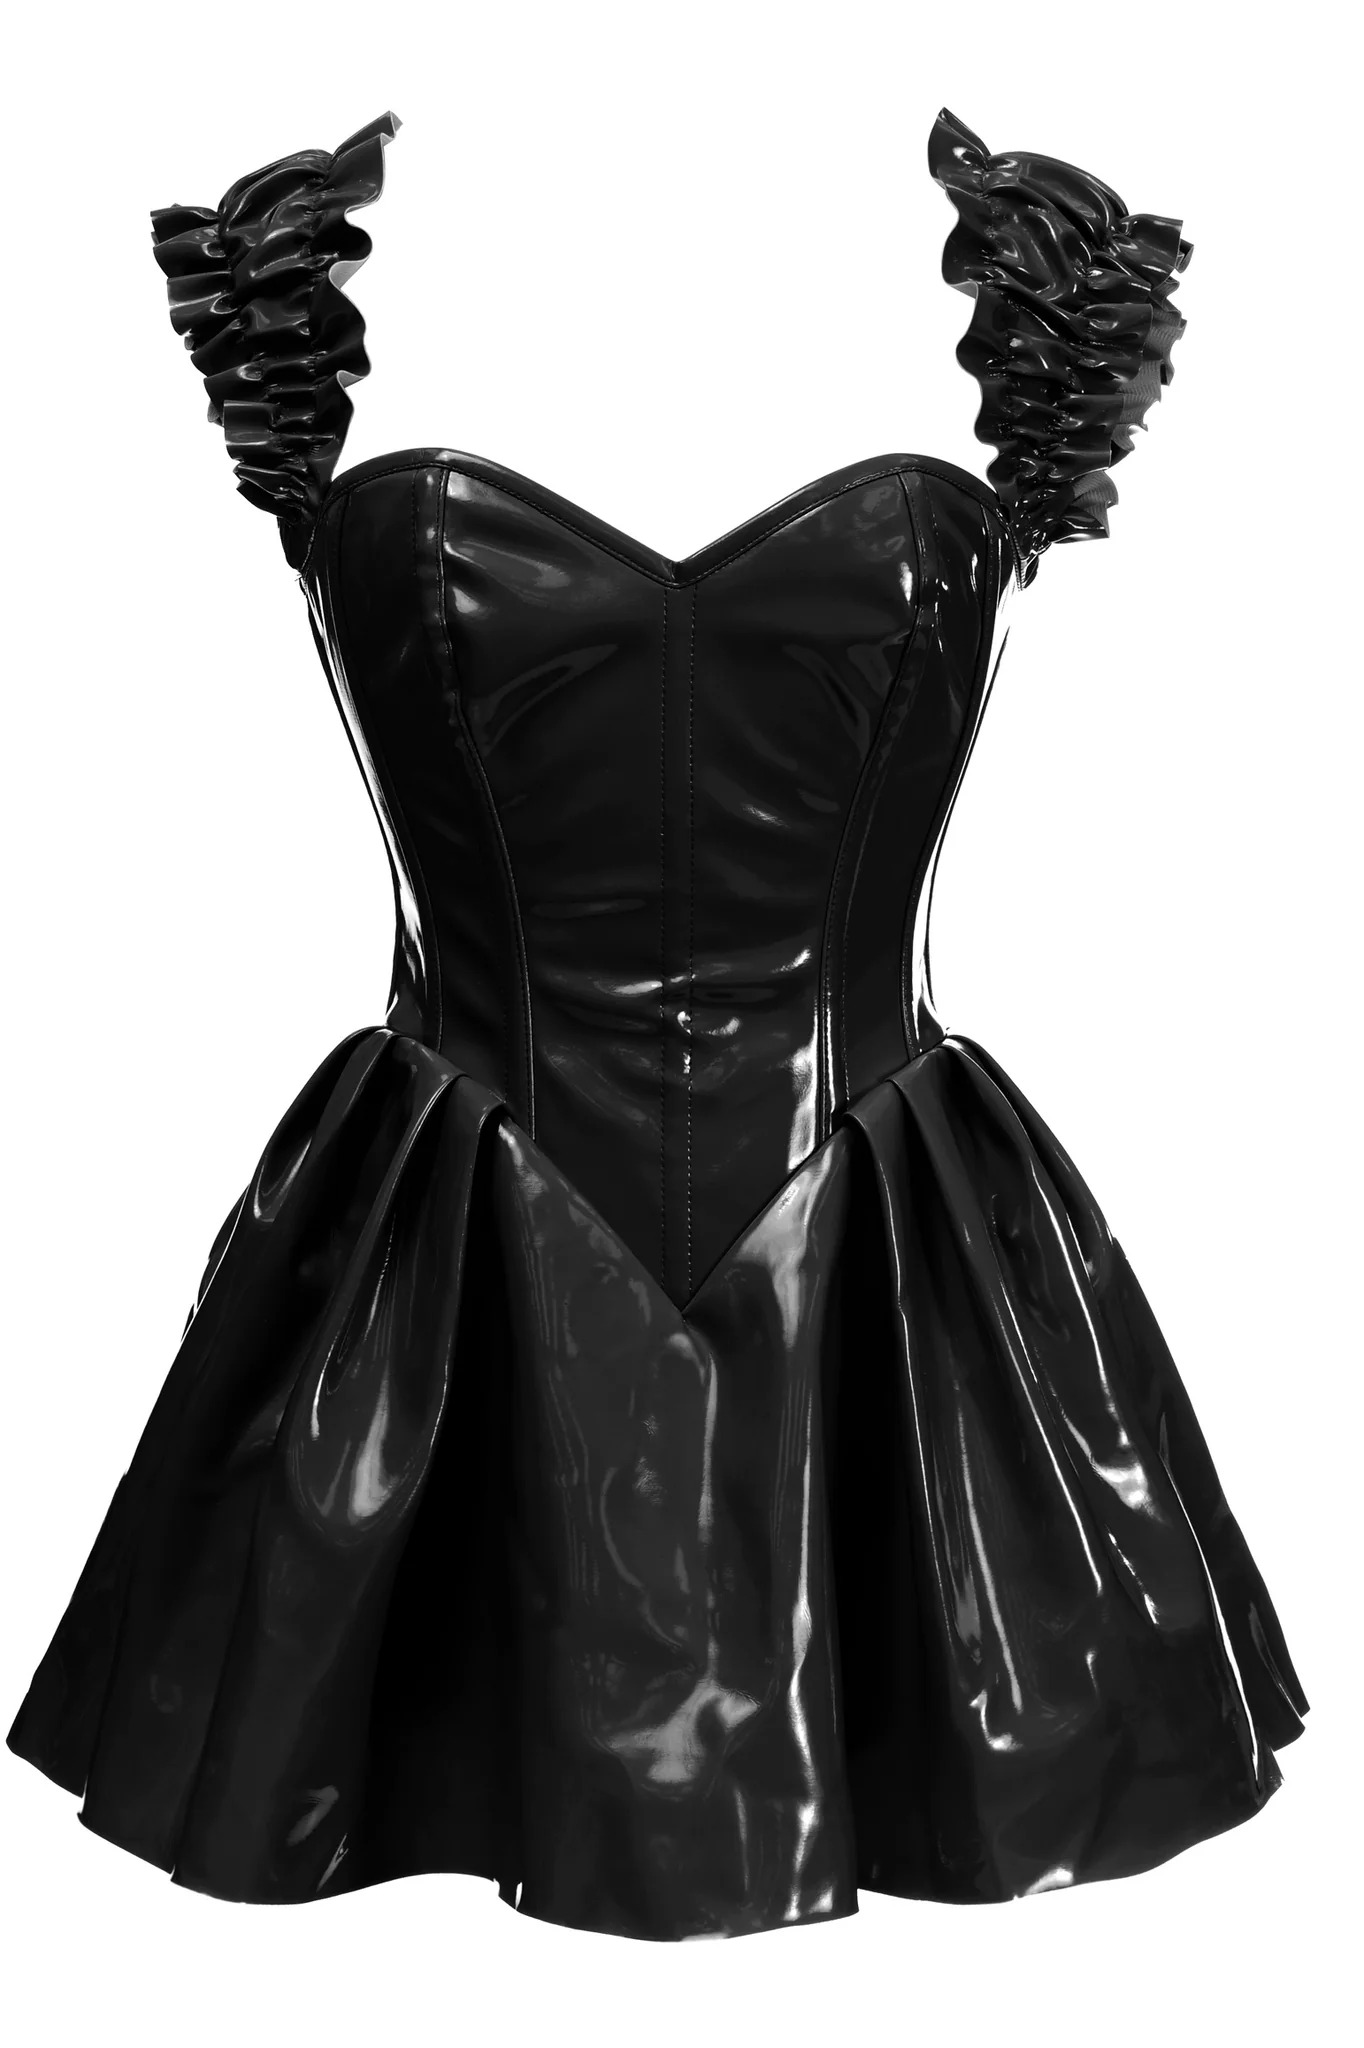 Adult Plus Size Black Patent PVC Vinyl Corset Dress Women Costum